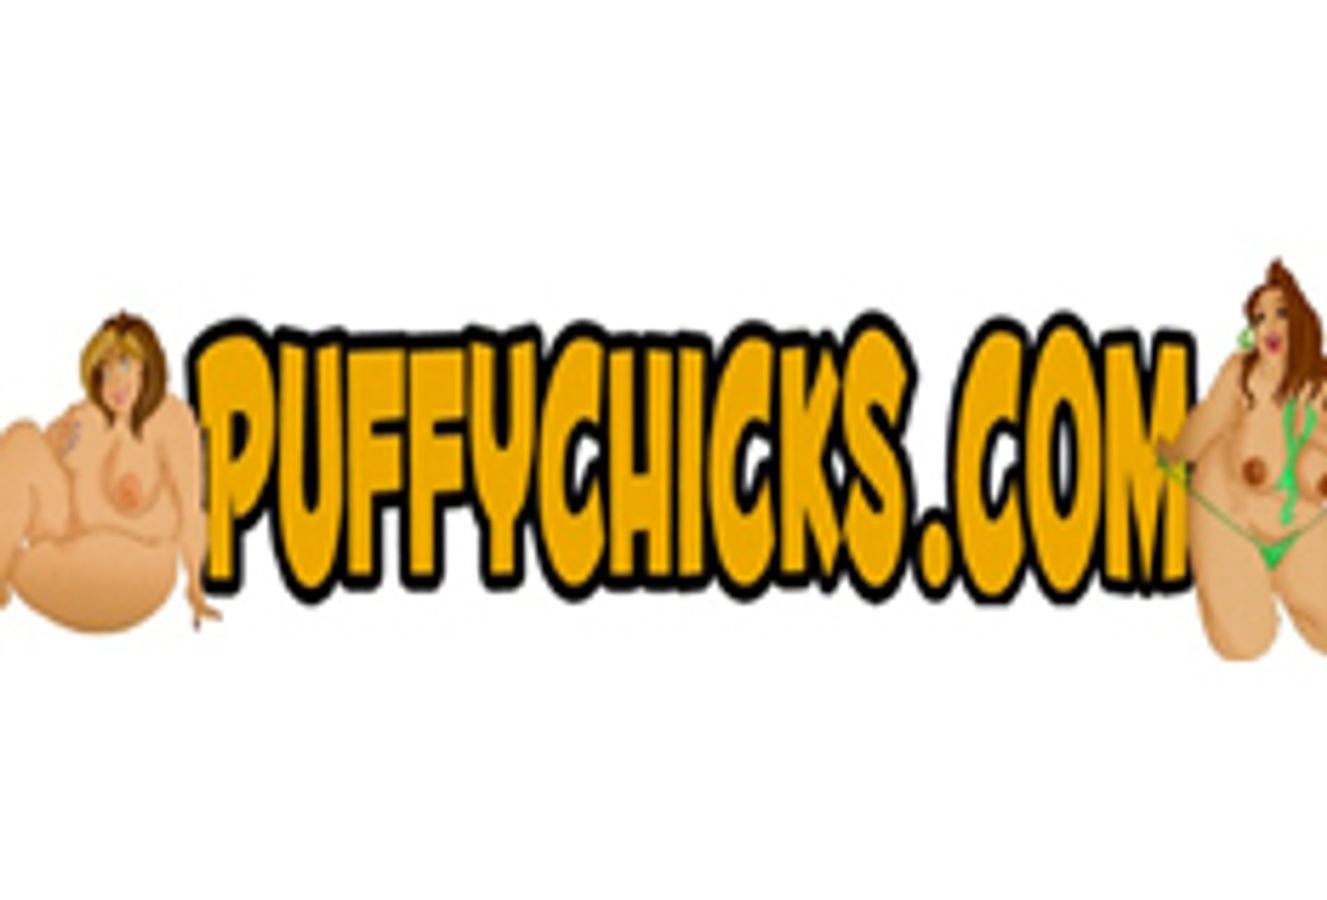 PuffyChicks.com